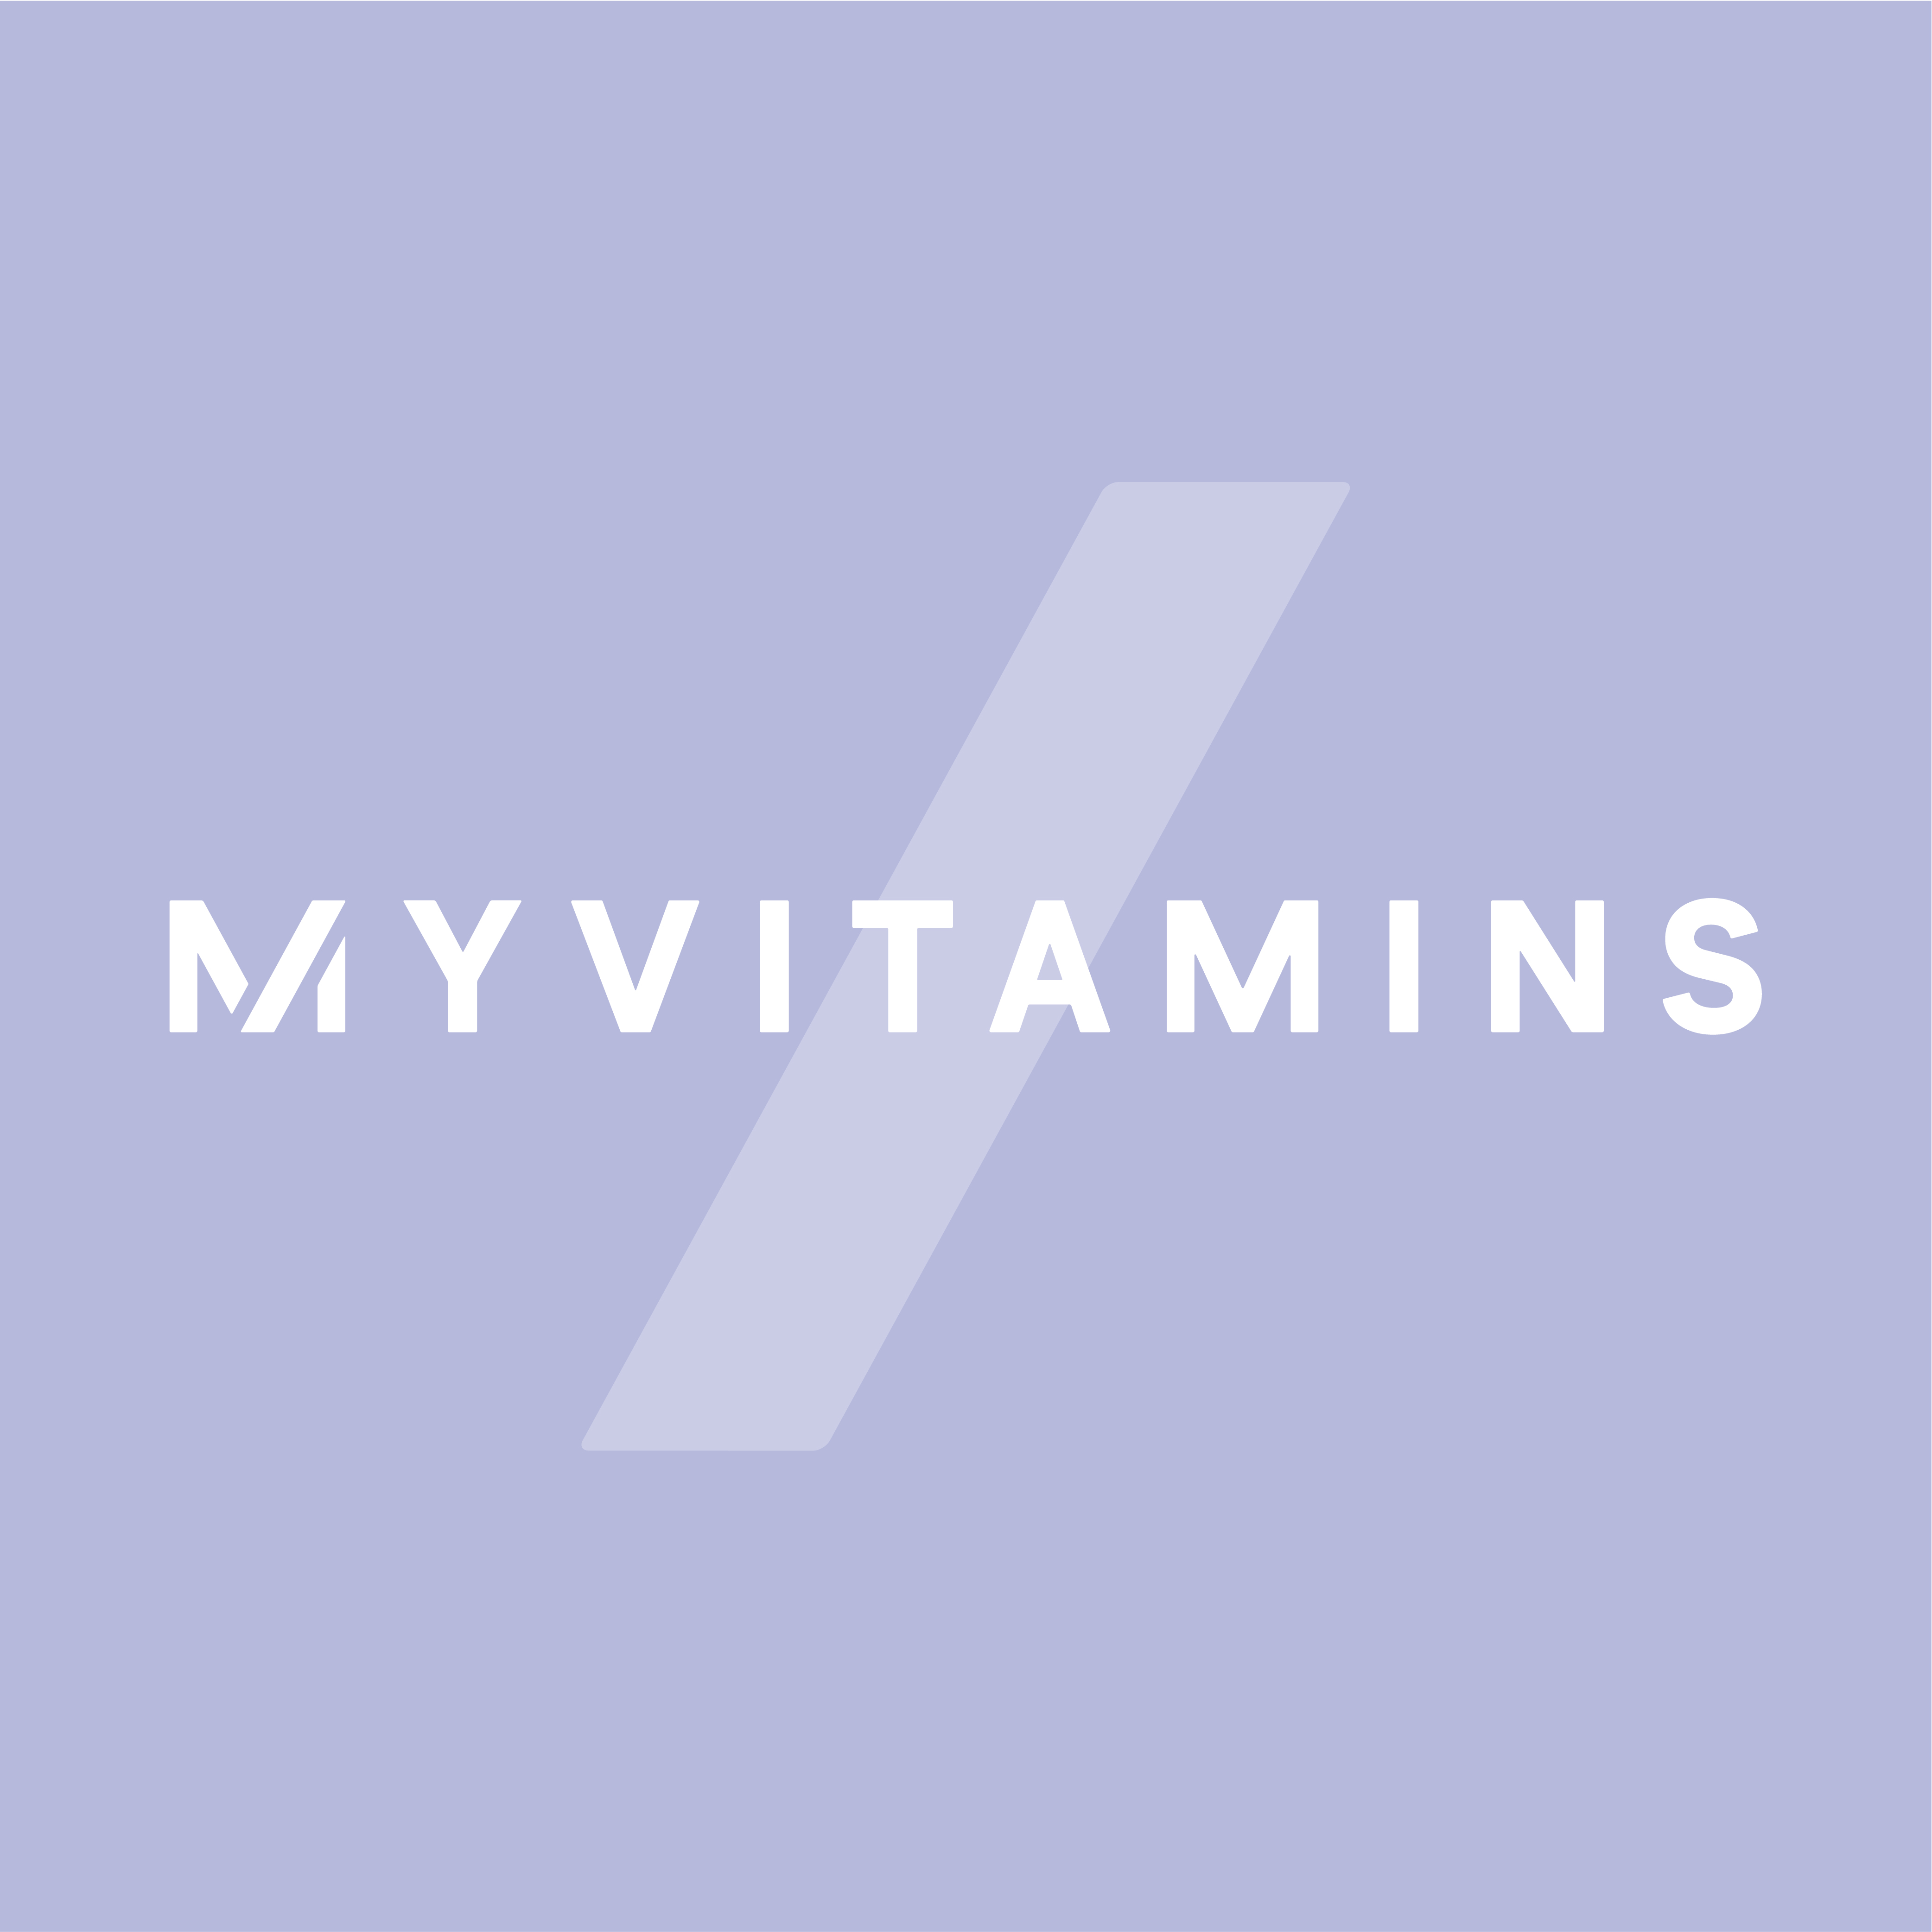 myvitamins.com_logo